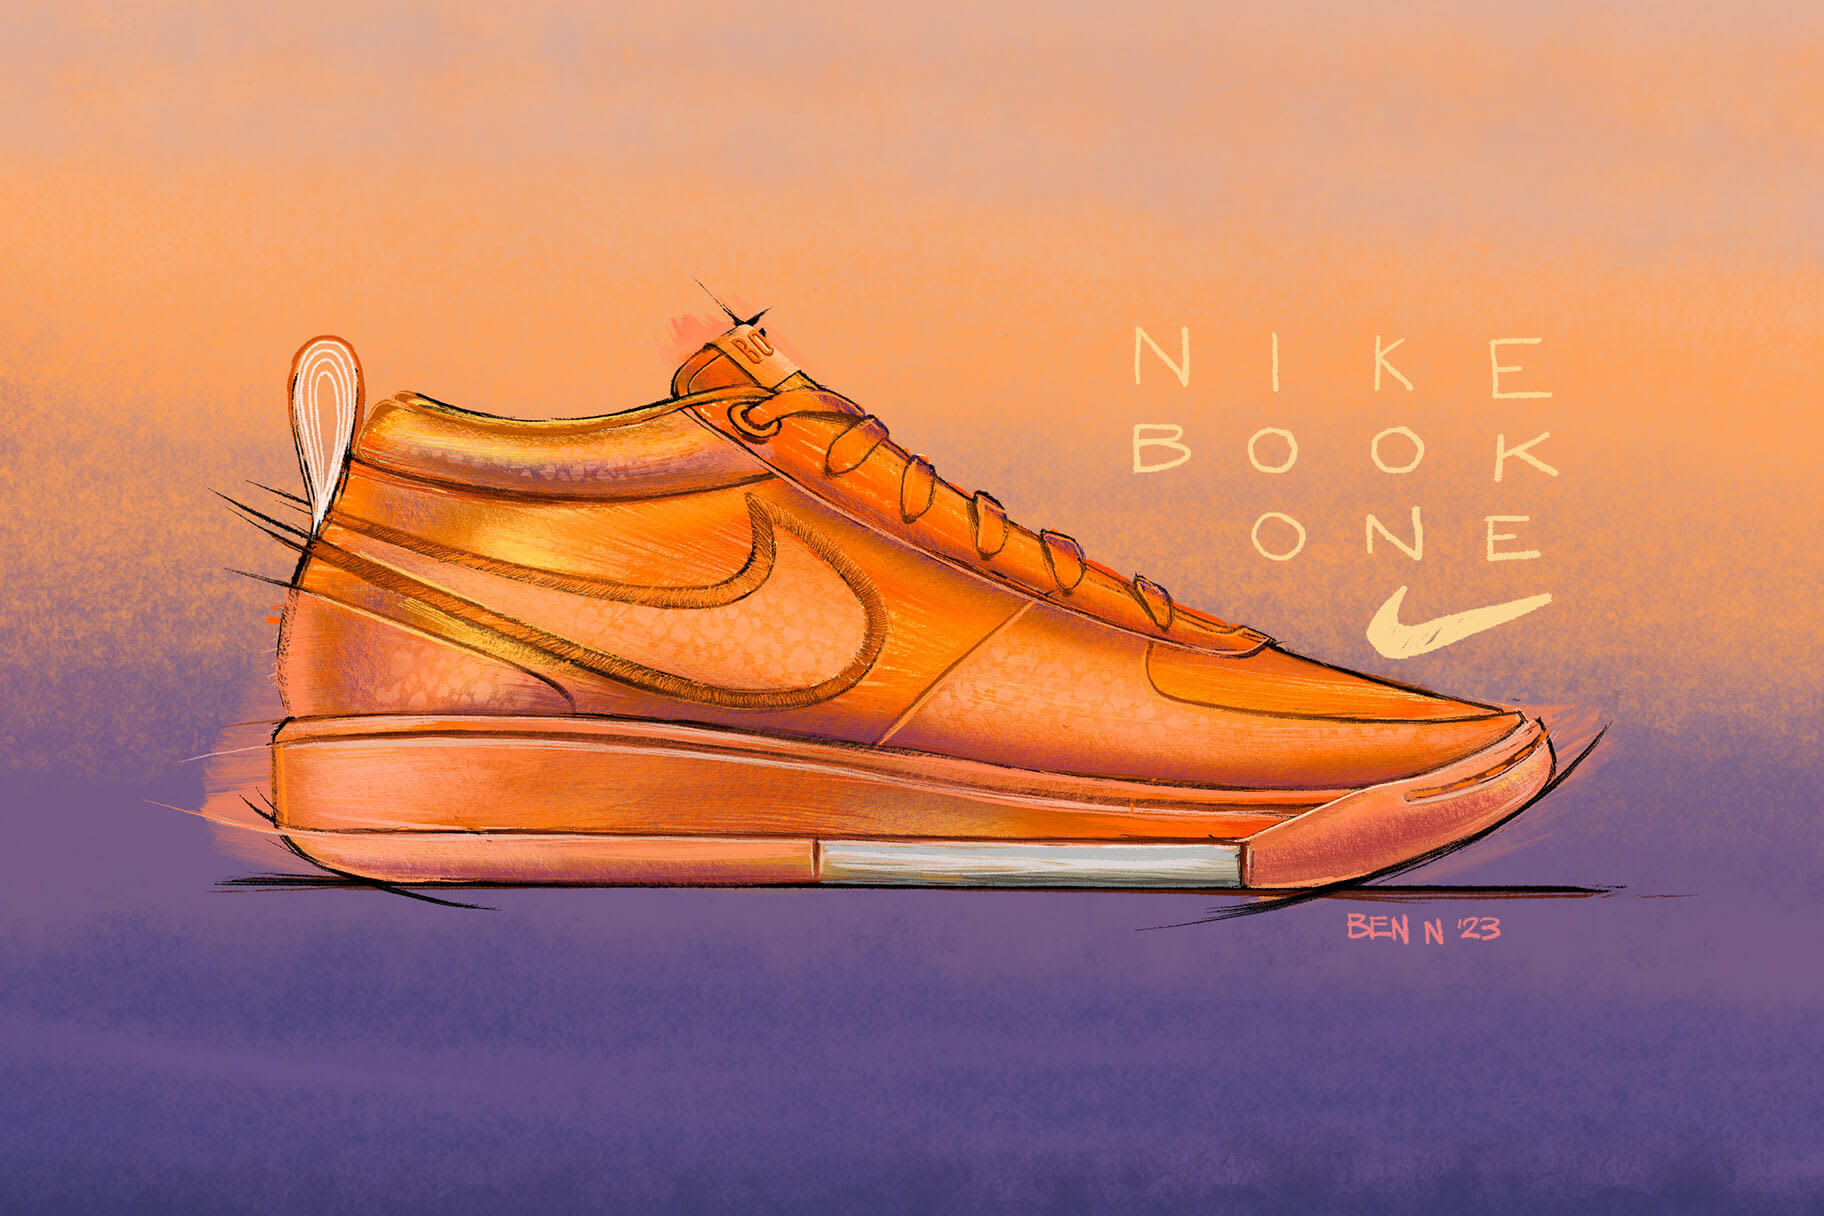 Nike introduceert eerste schoen in samenwerking met Devin Booker, de Nike Book 1